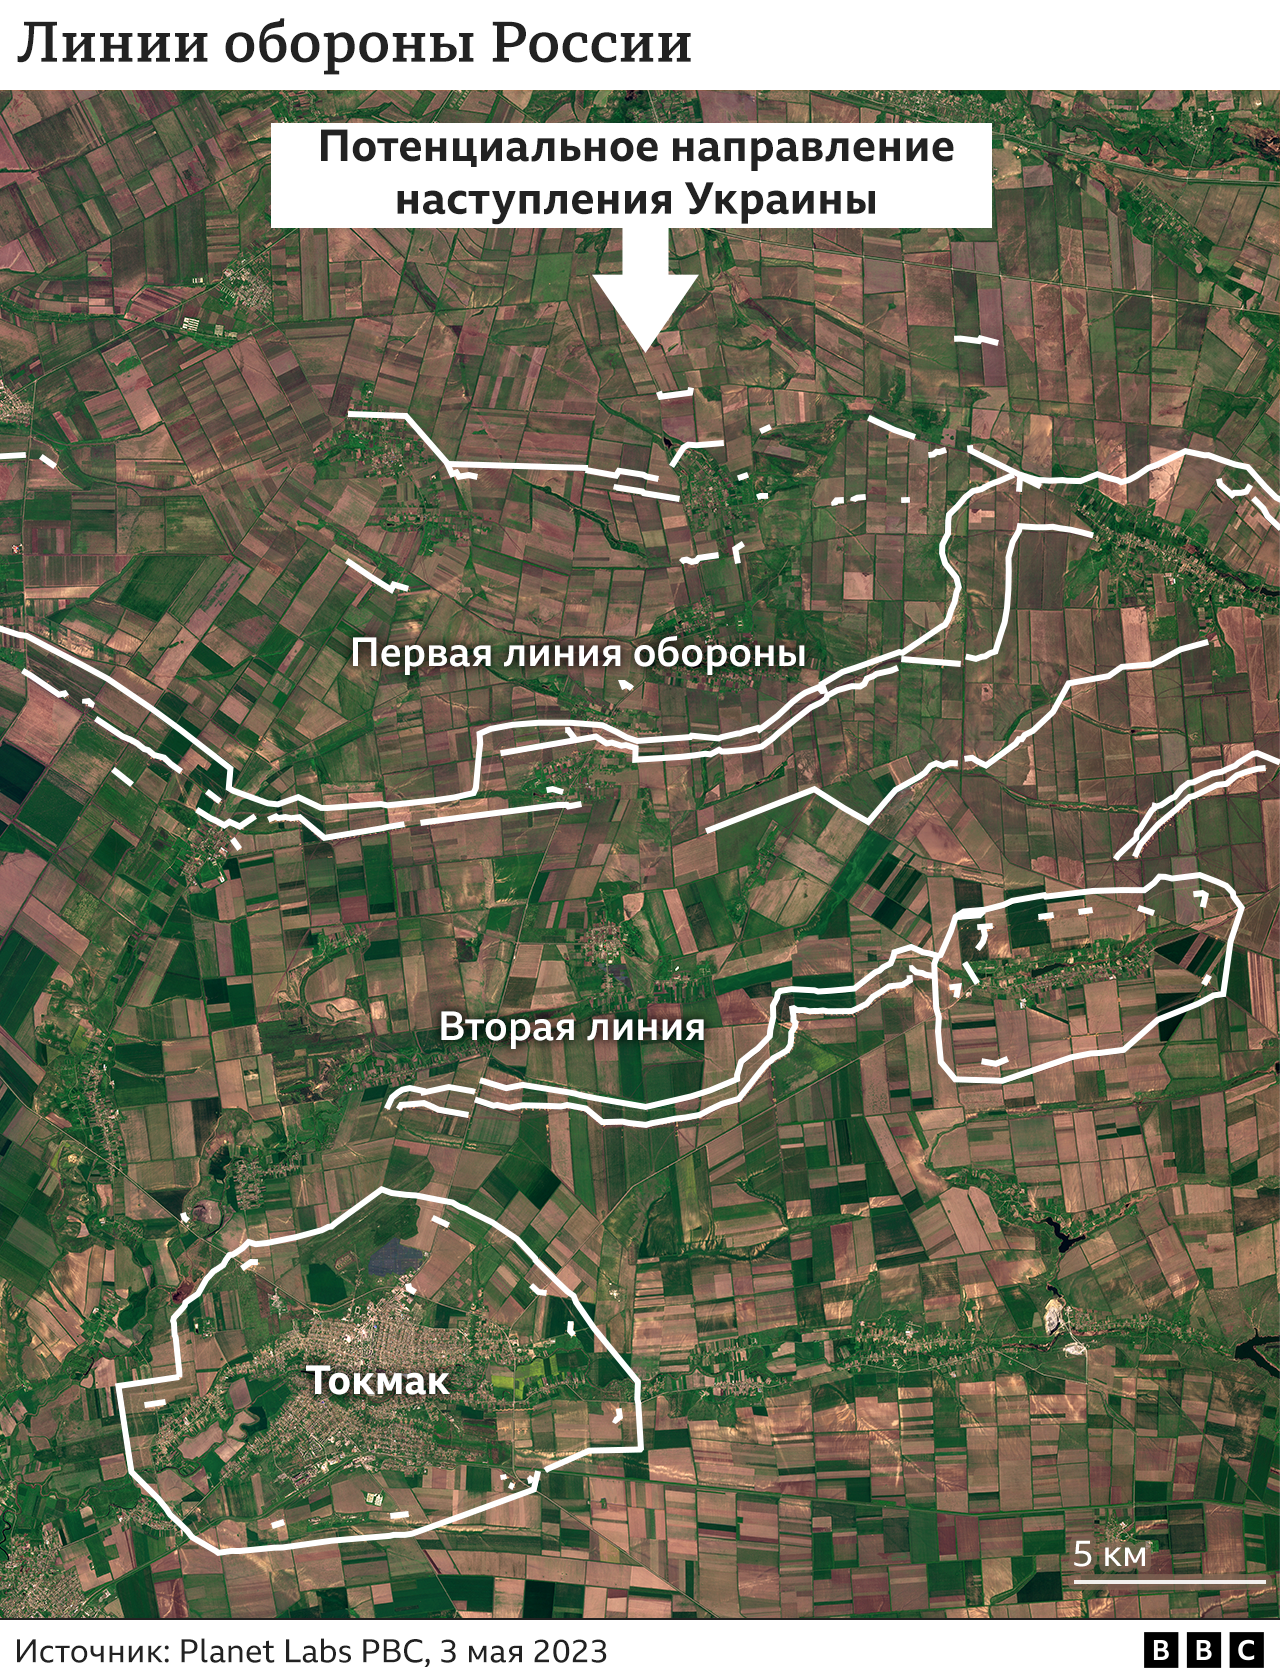 Спутниковый снимок Токмака (выше) показывает, как к северу от города была создана система траншей из двух линий